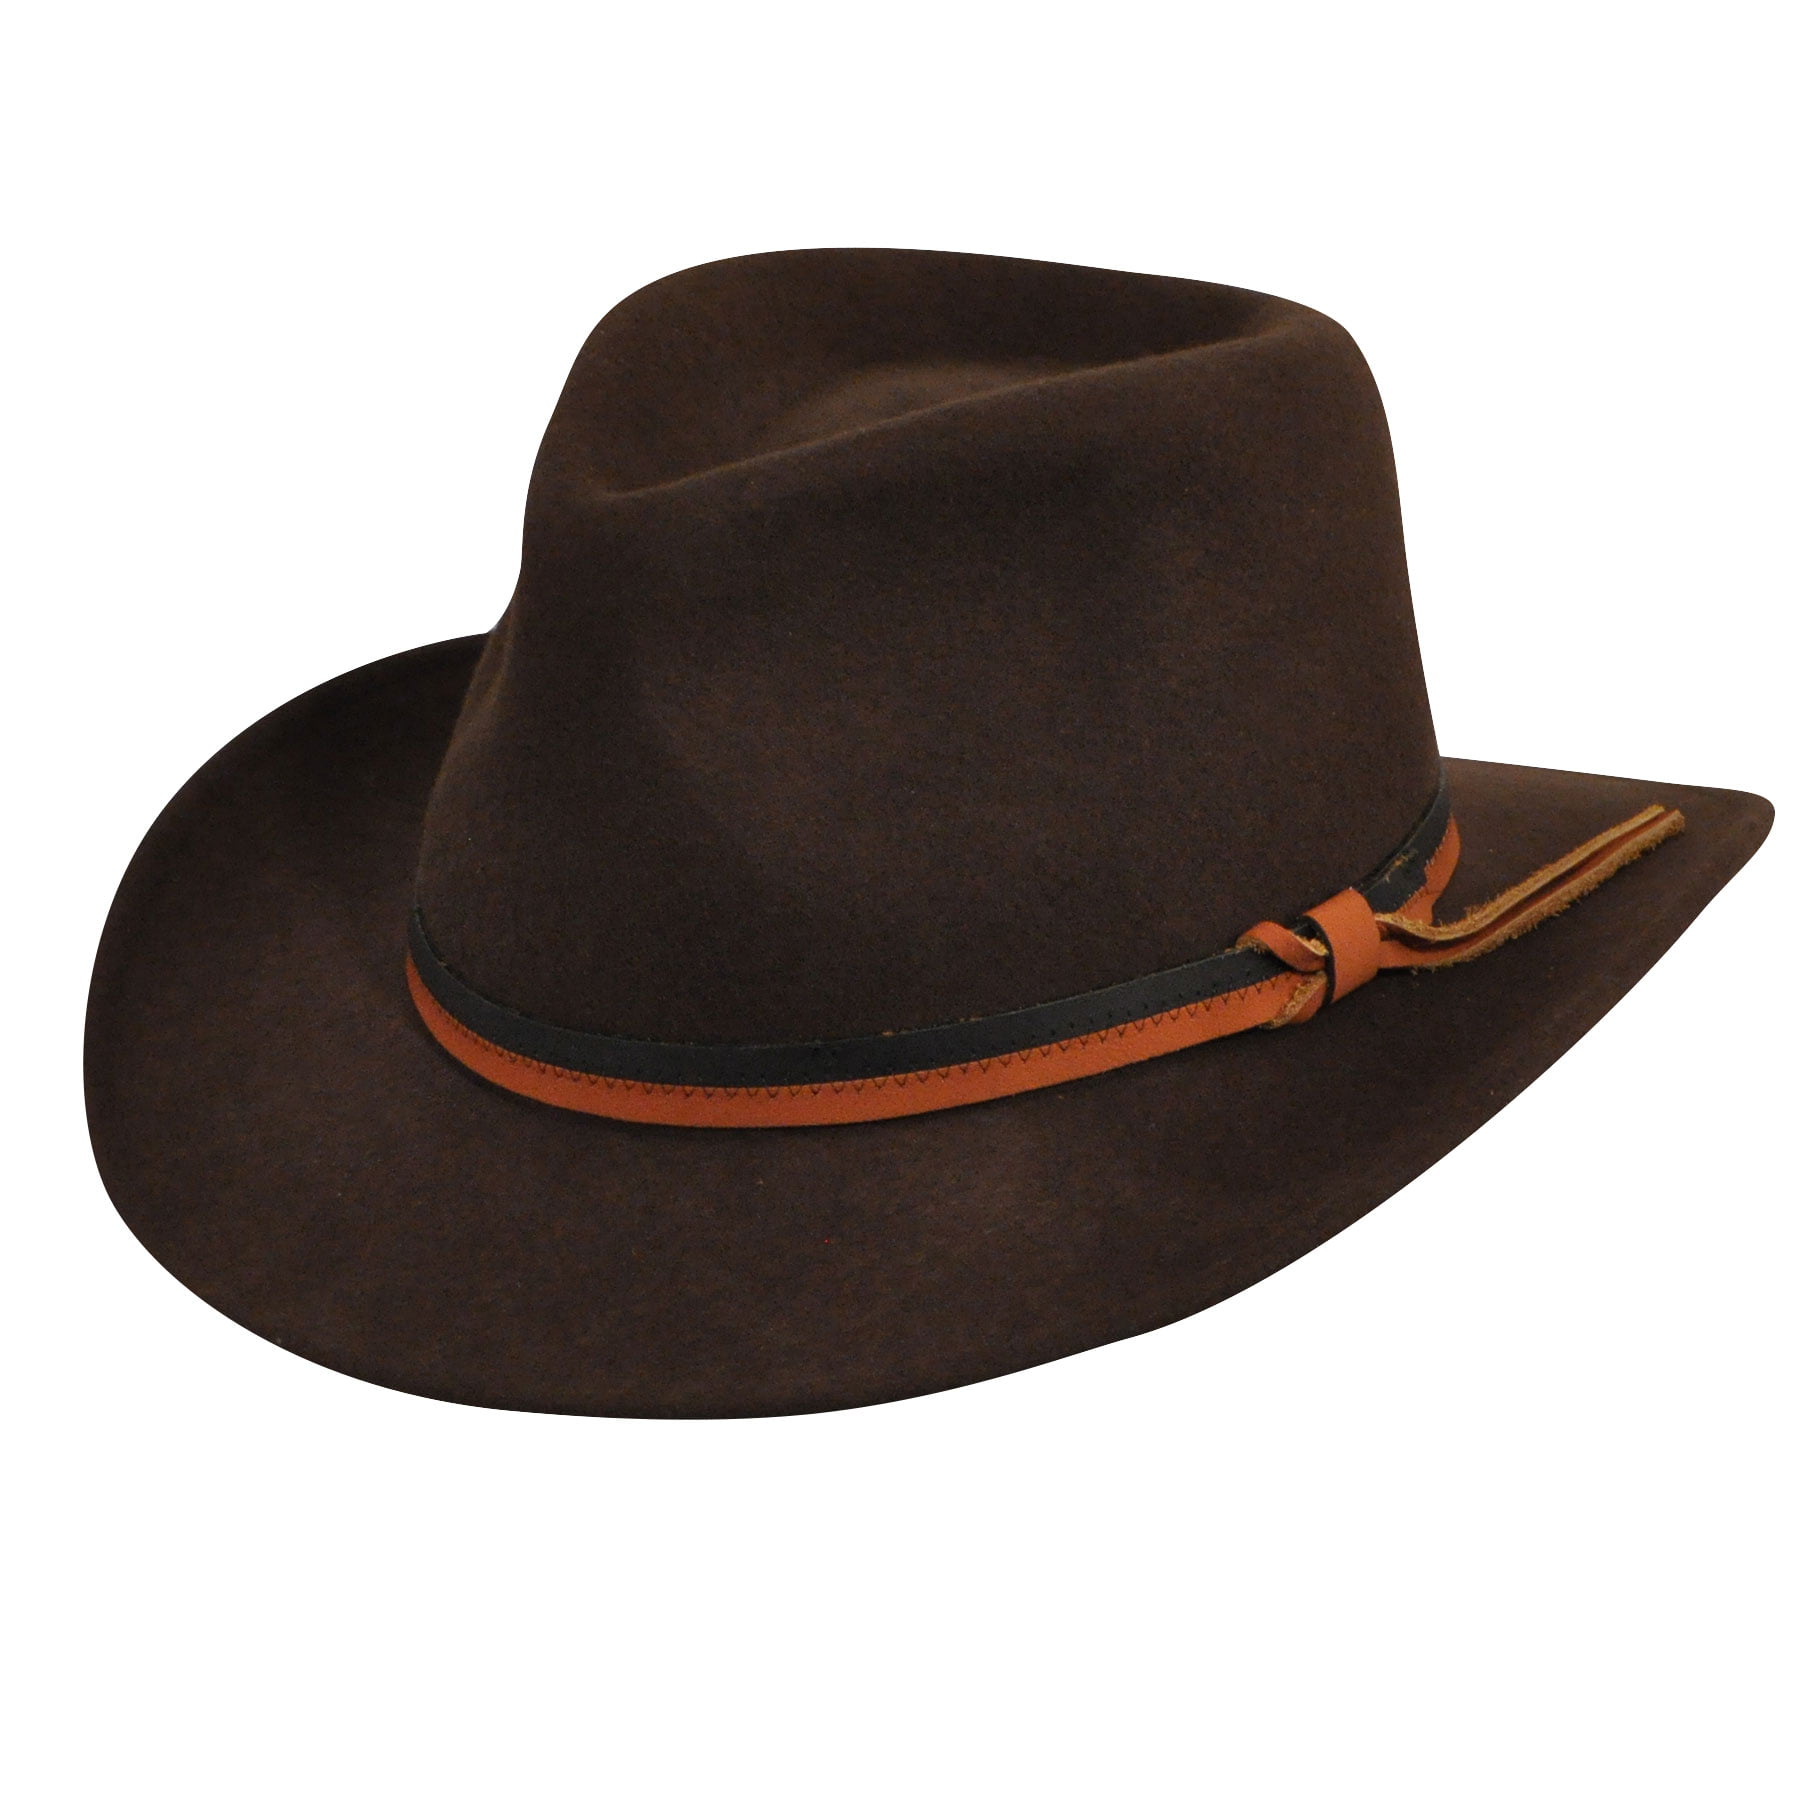 Vintage Country Gentleman Hat in Brown Wool Felt in Large